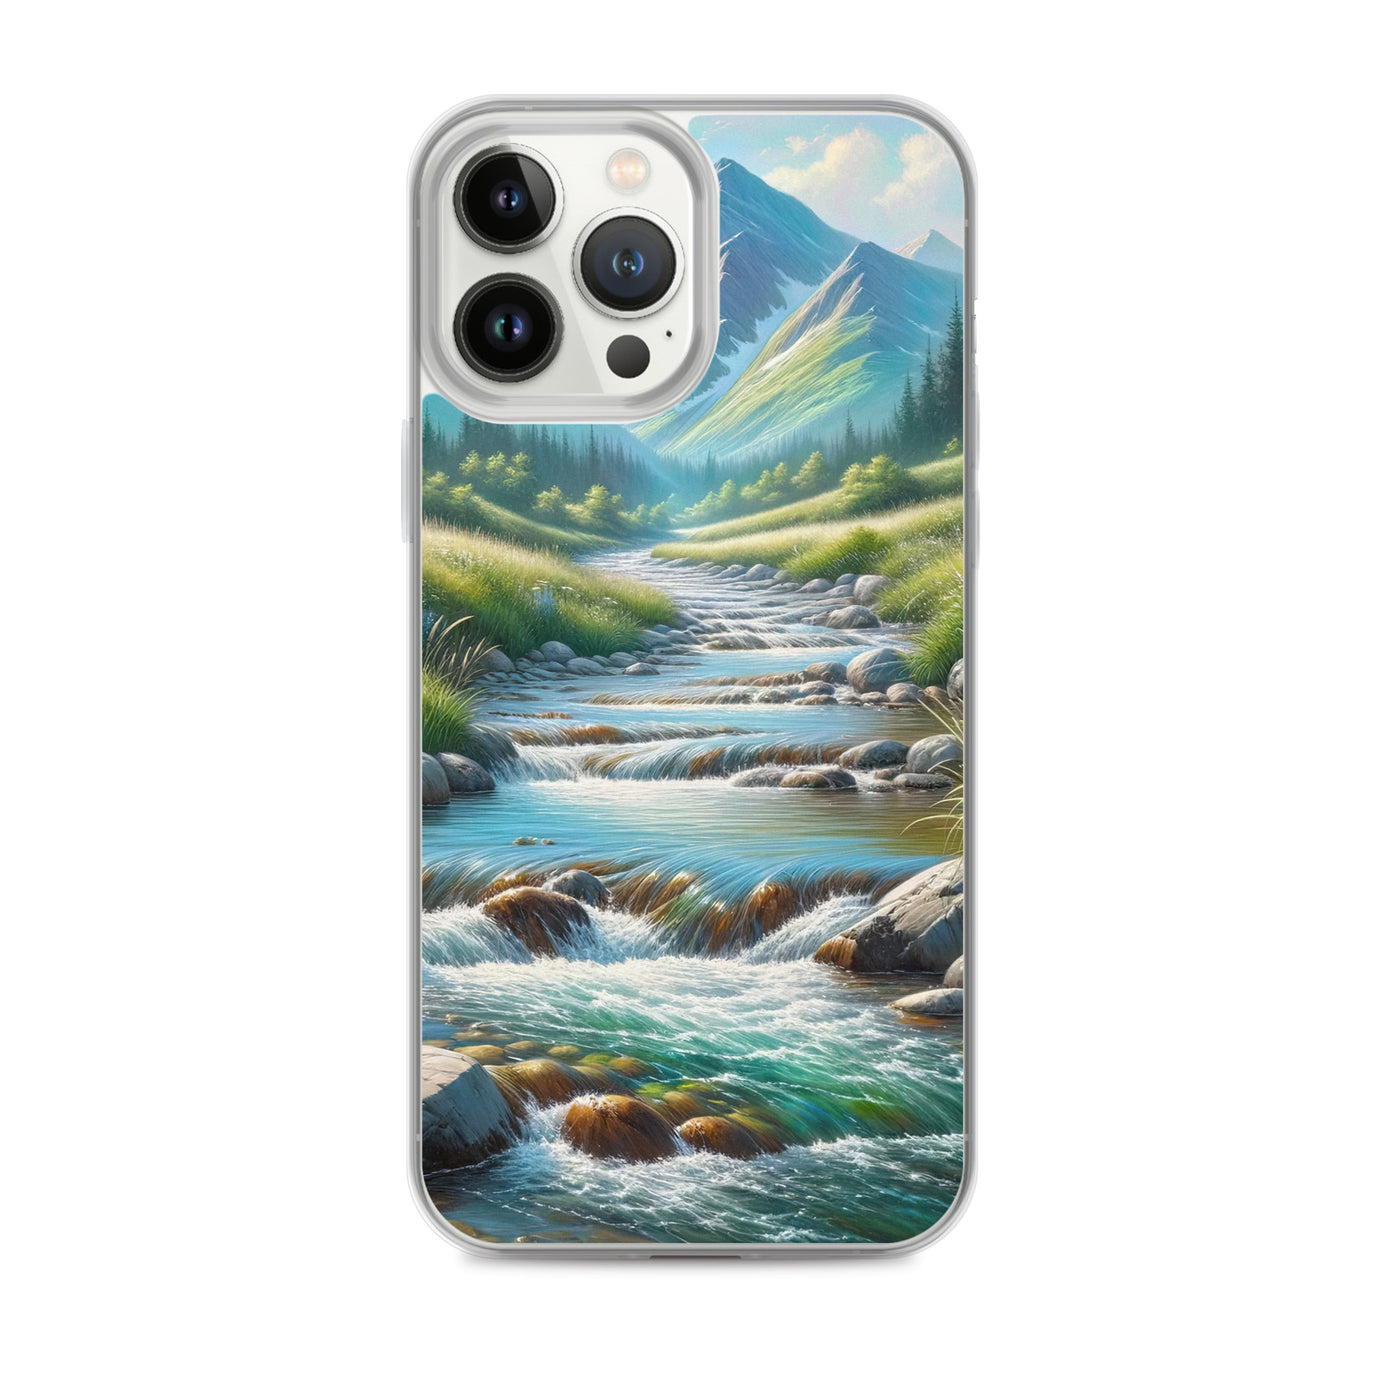 Sanfter Gebirgsbach in Ölgemälde, klares Wasser über glatten Felsen - iPhone Schutzhülle (durchsichtig) berge xxx yyy zzz iPhone 13 Pro Max